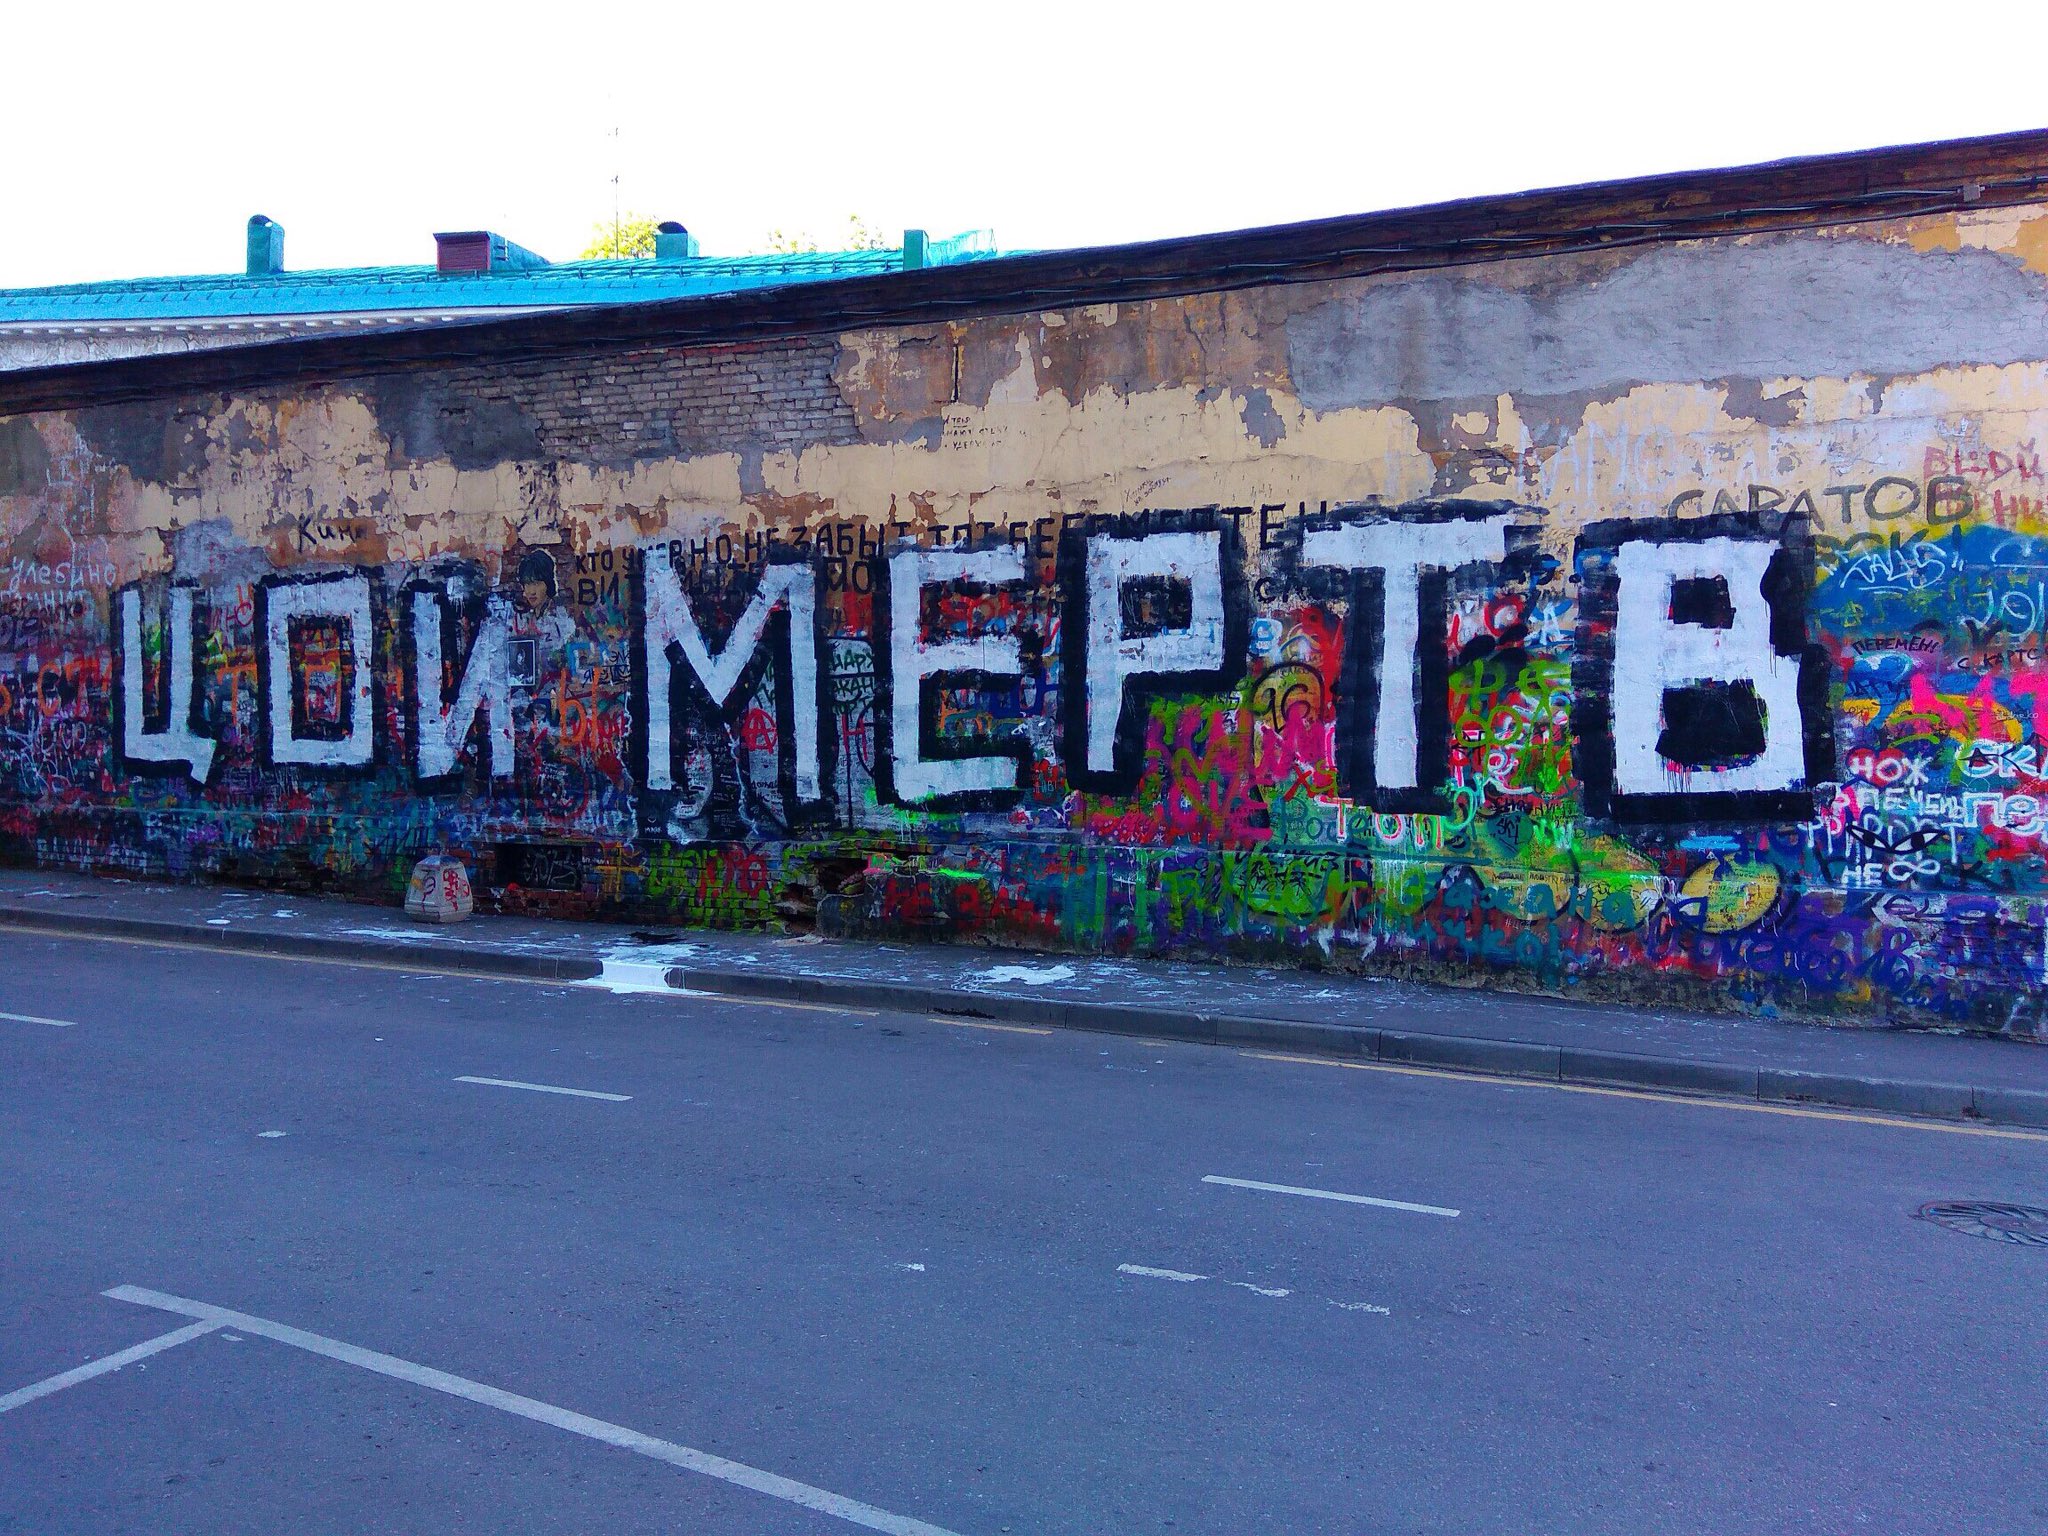 "Цой мертвий": У Москві зафарбували стіну Цоя   - фото 1